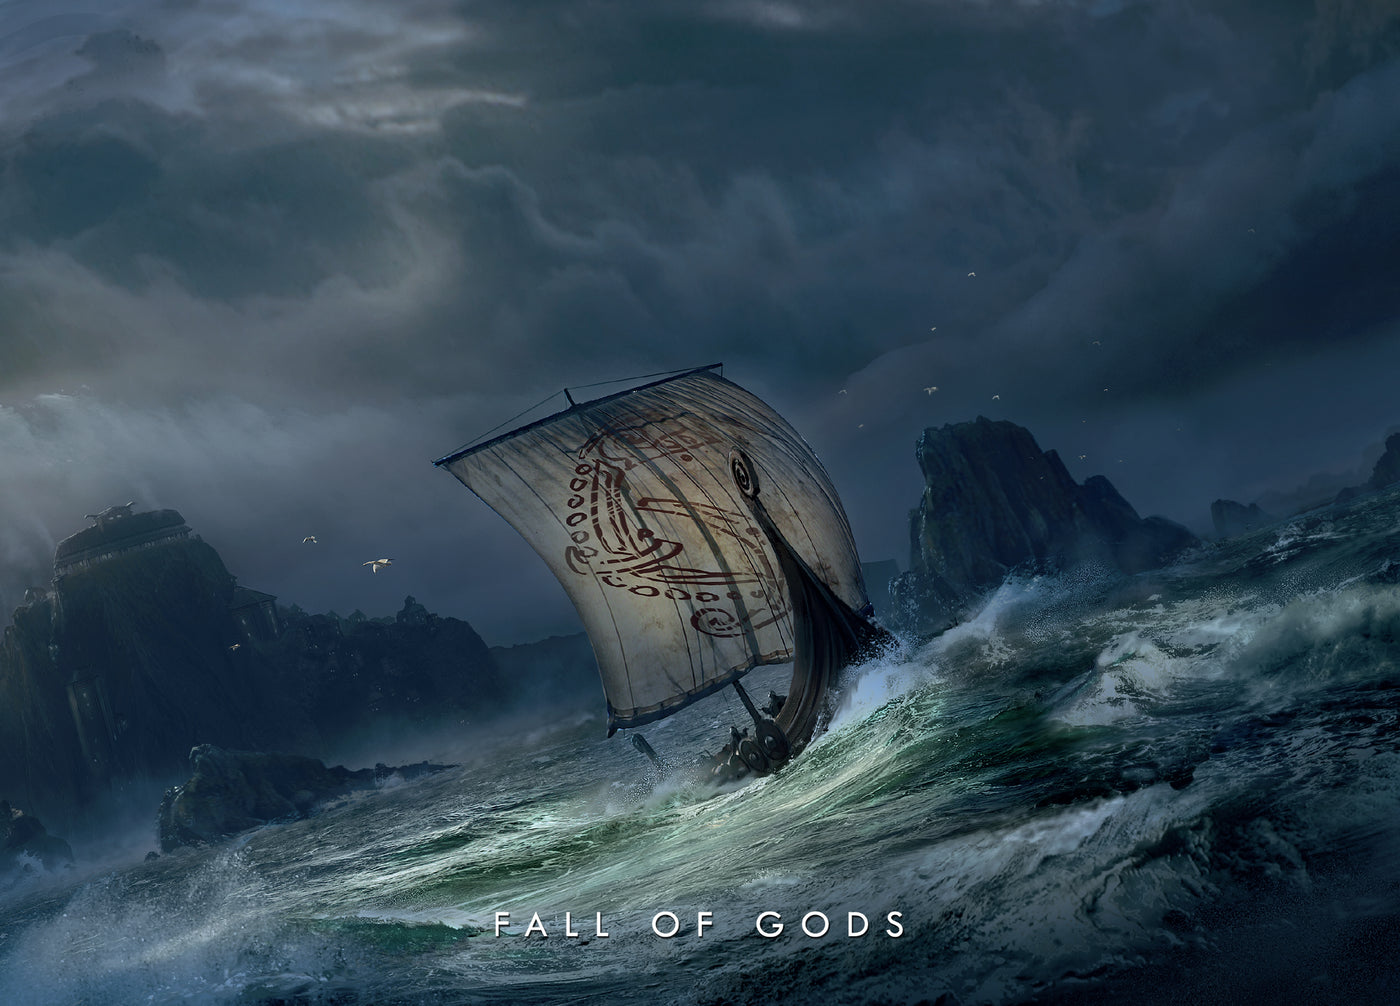 Sets & Bundles - Fall of Gods Bundle - Grimfrost.com